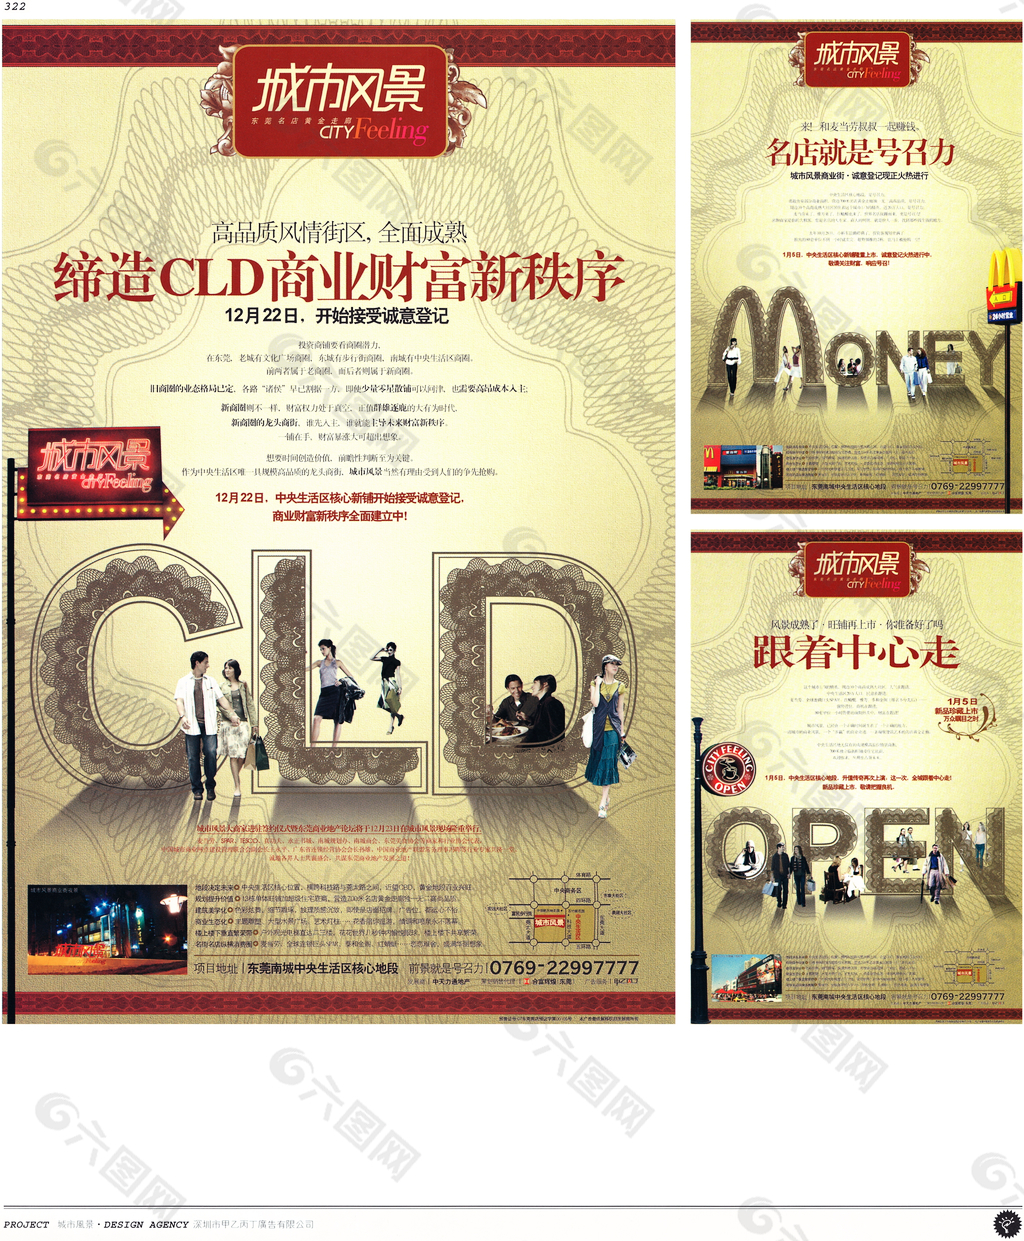 中国房地产广告年鉴 第二册 创意设计_0304